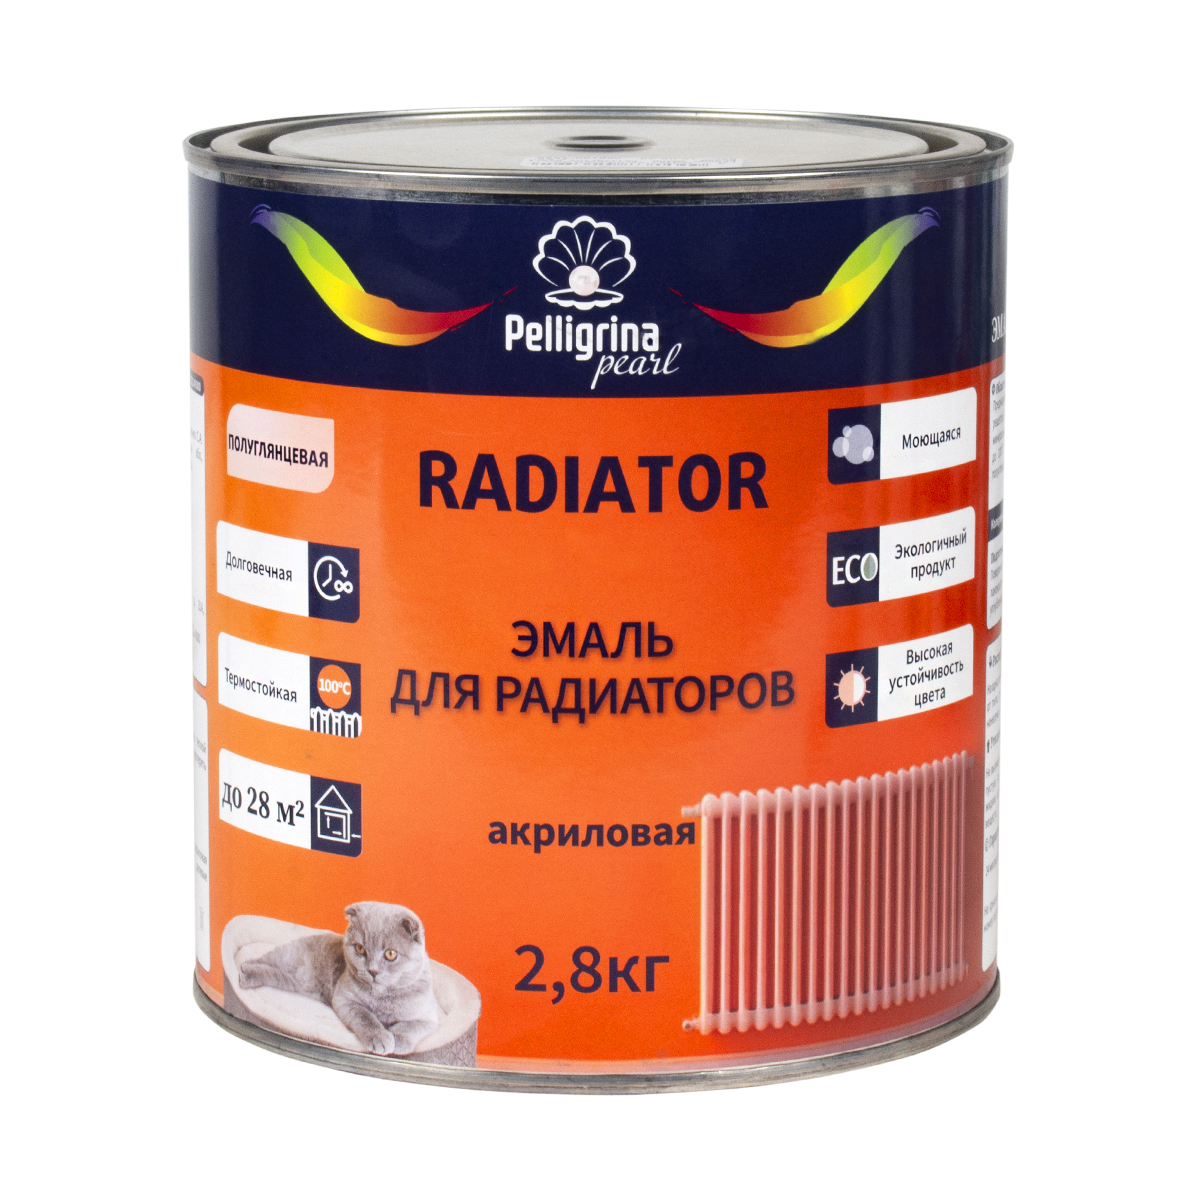 Эмаль для радиаторов Pelligrina Pearl PP-075, акриловая, полуглянцевая, белая, 2,8 кг акриловая эмаль для радиаторов krafor